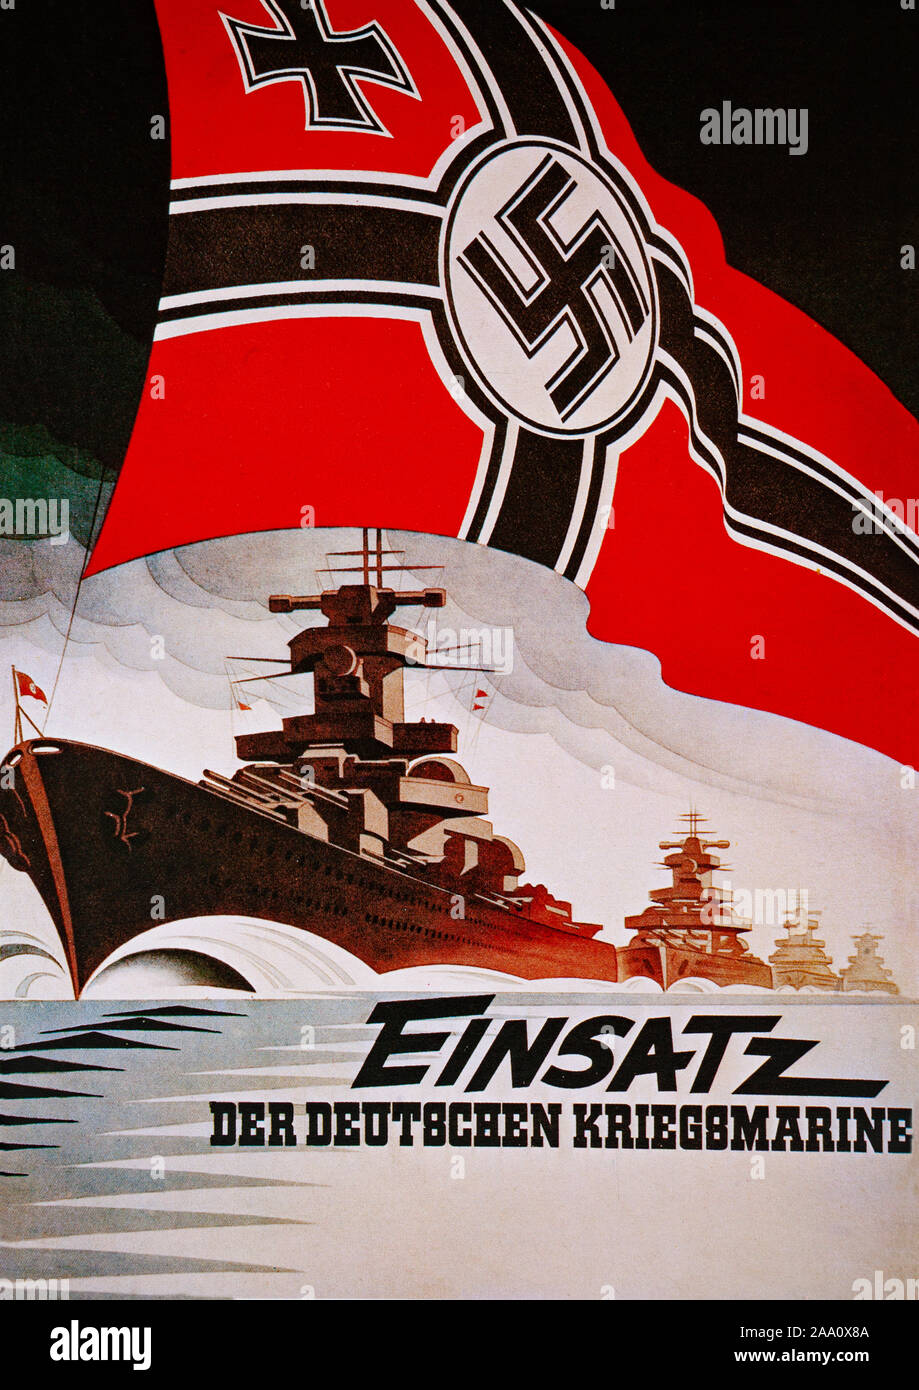 Una seconda guerra mondiale poster di reclutamento per la Kriegsmarine, la marina militare della Germania nazista dal 1935 al 1945. Esso ha sostituito le Imperial marina militare tedesca dell'impero tedesco (1871-1918) e l'inter-war Reichsmarine (1919-1935) della Repubblica di Weimar. Foto Stock